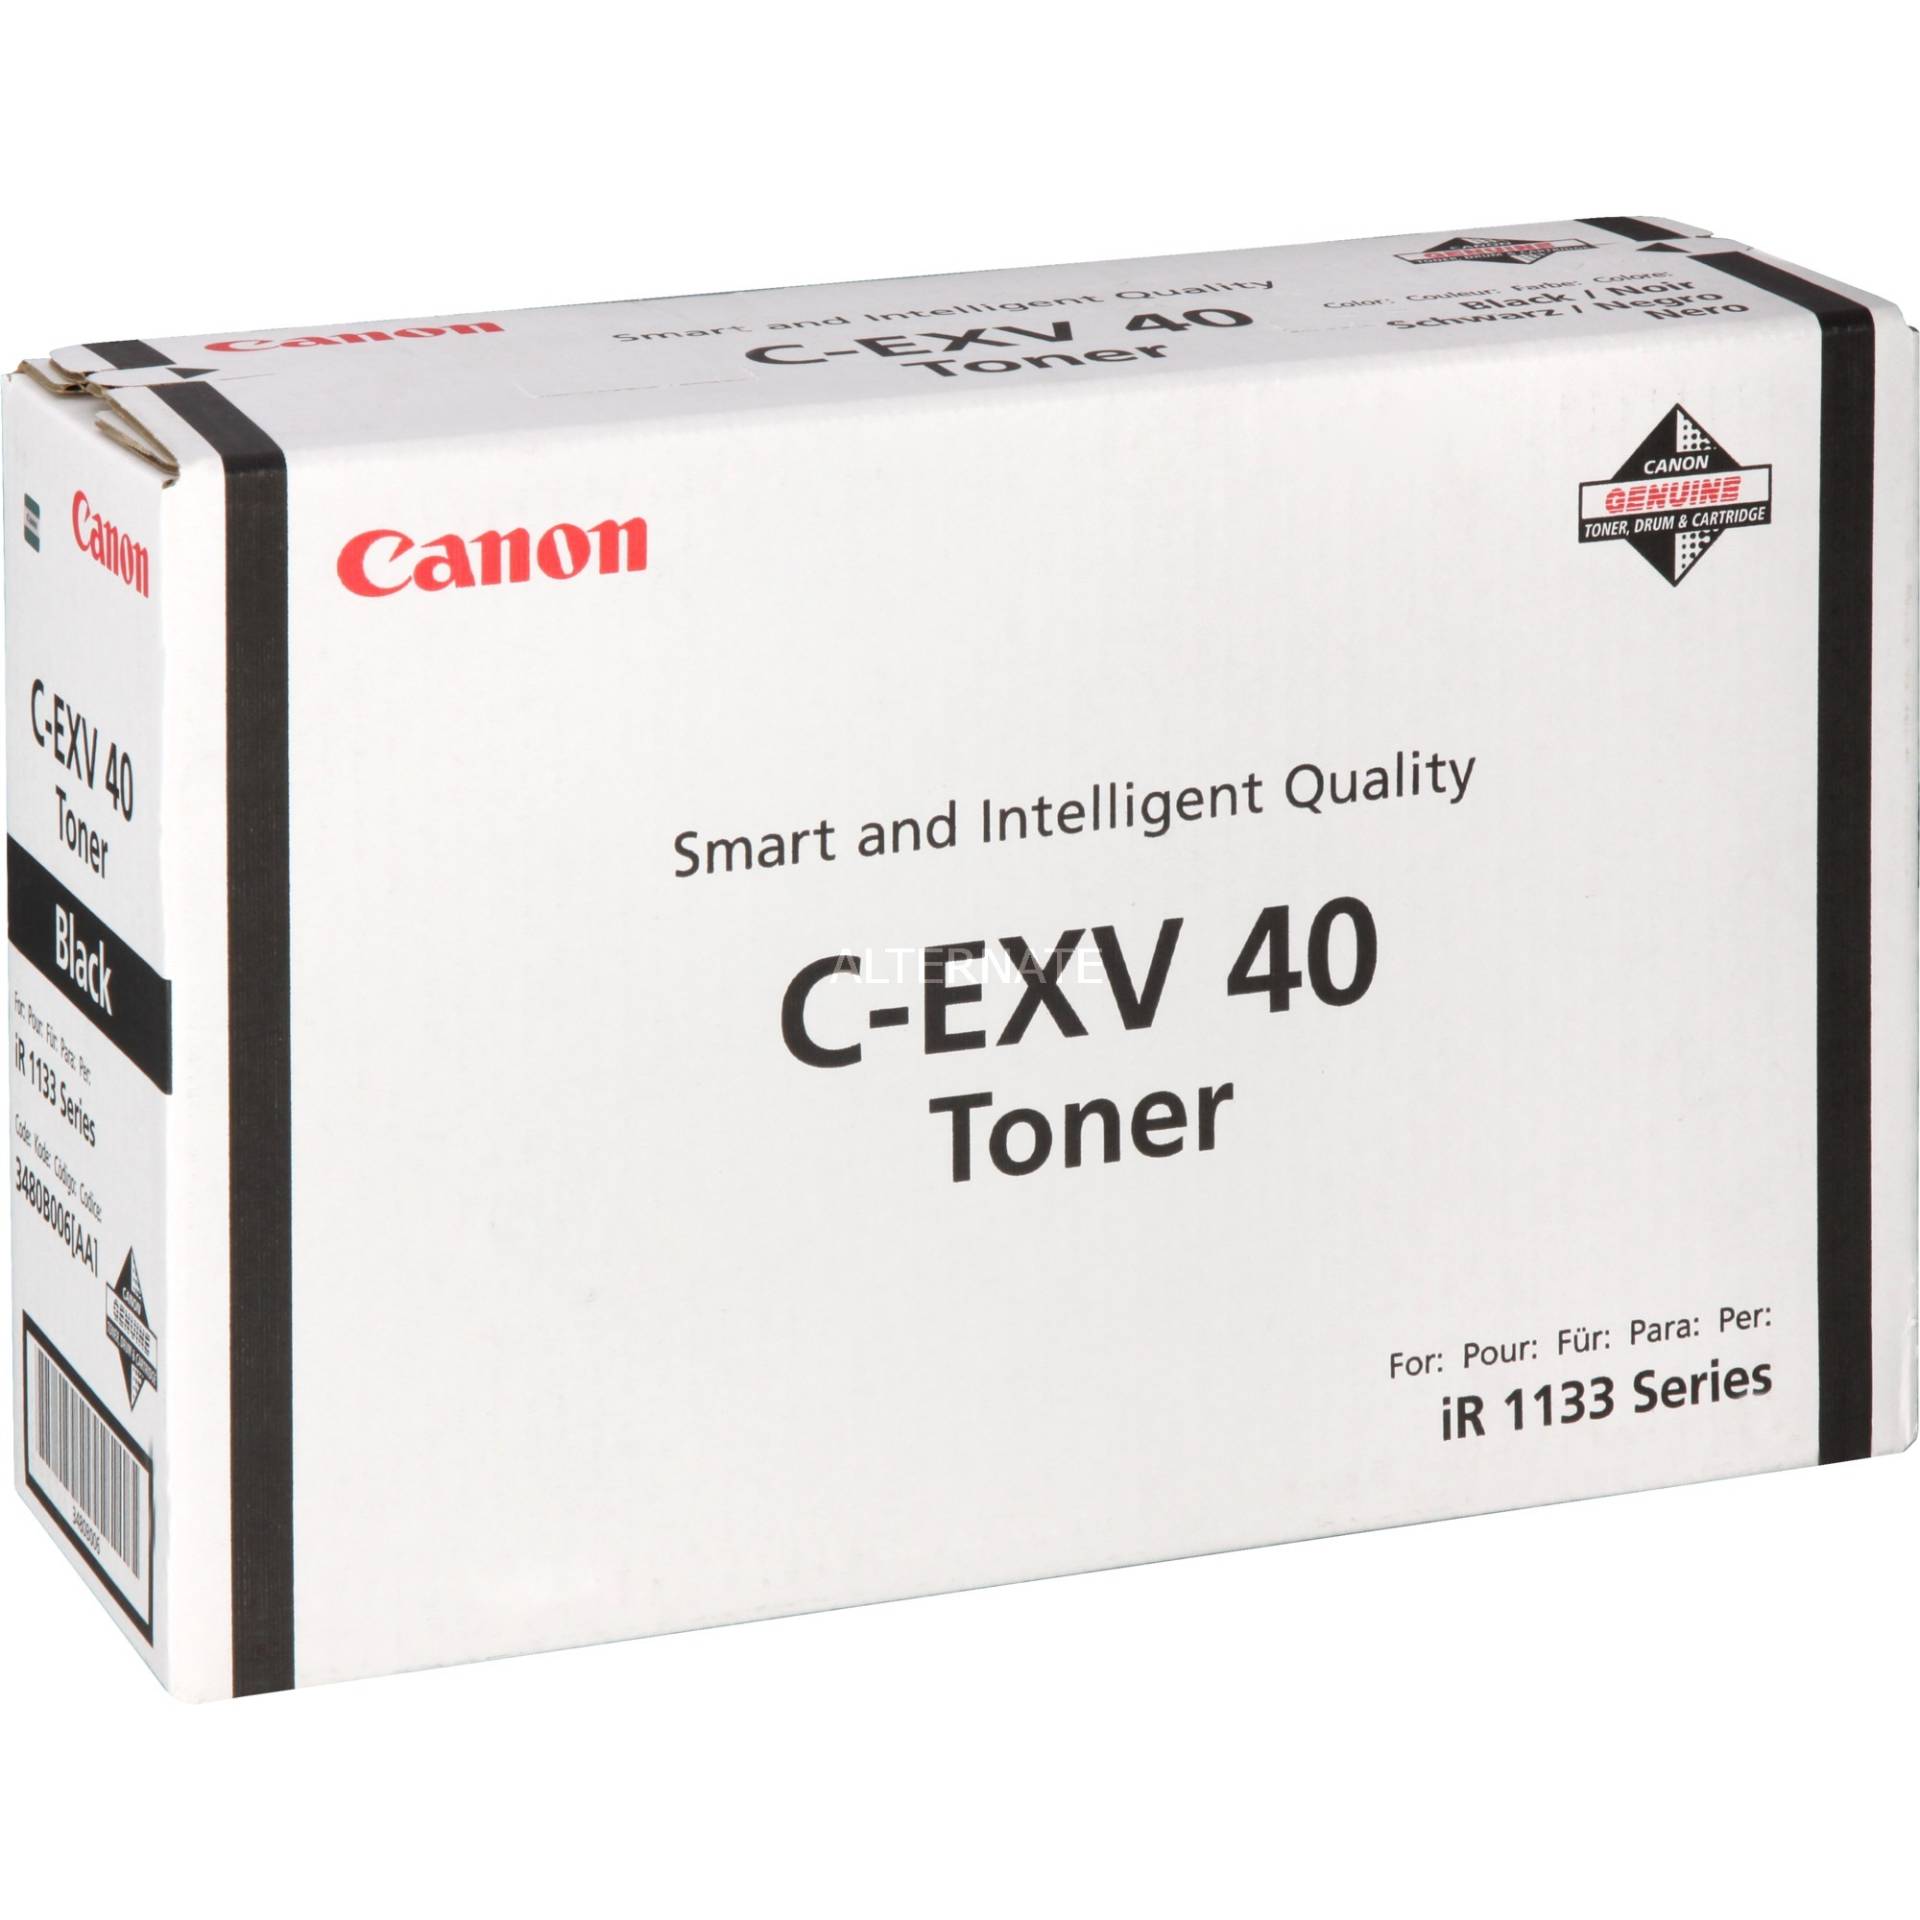 Toner schwarz C-EXV 40 von Canon